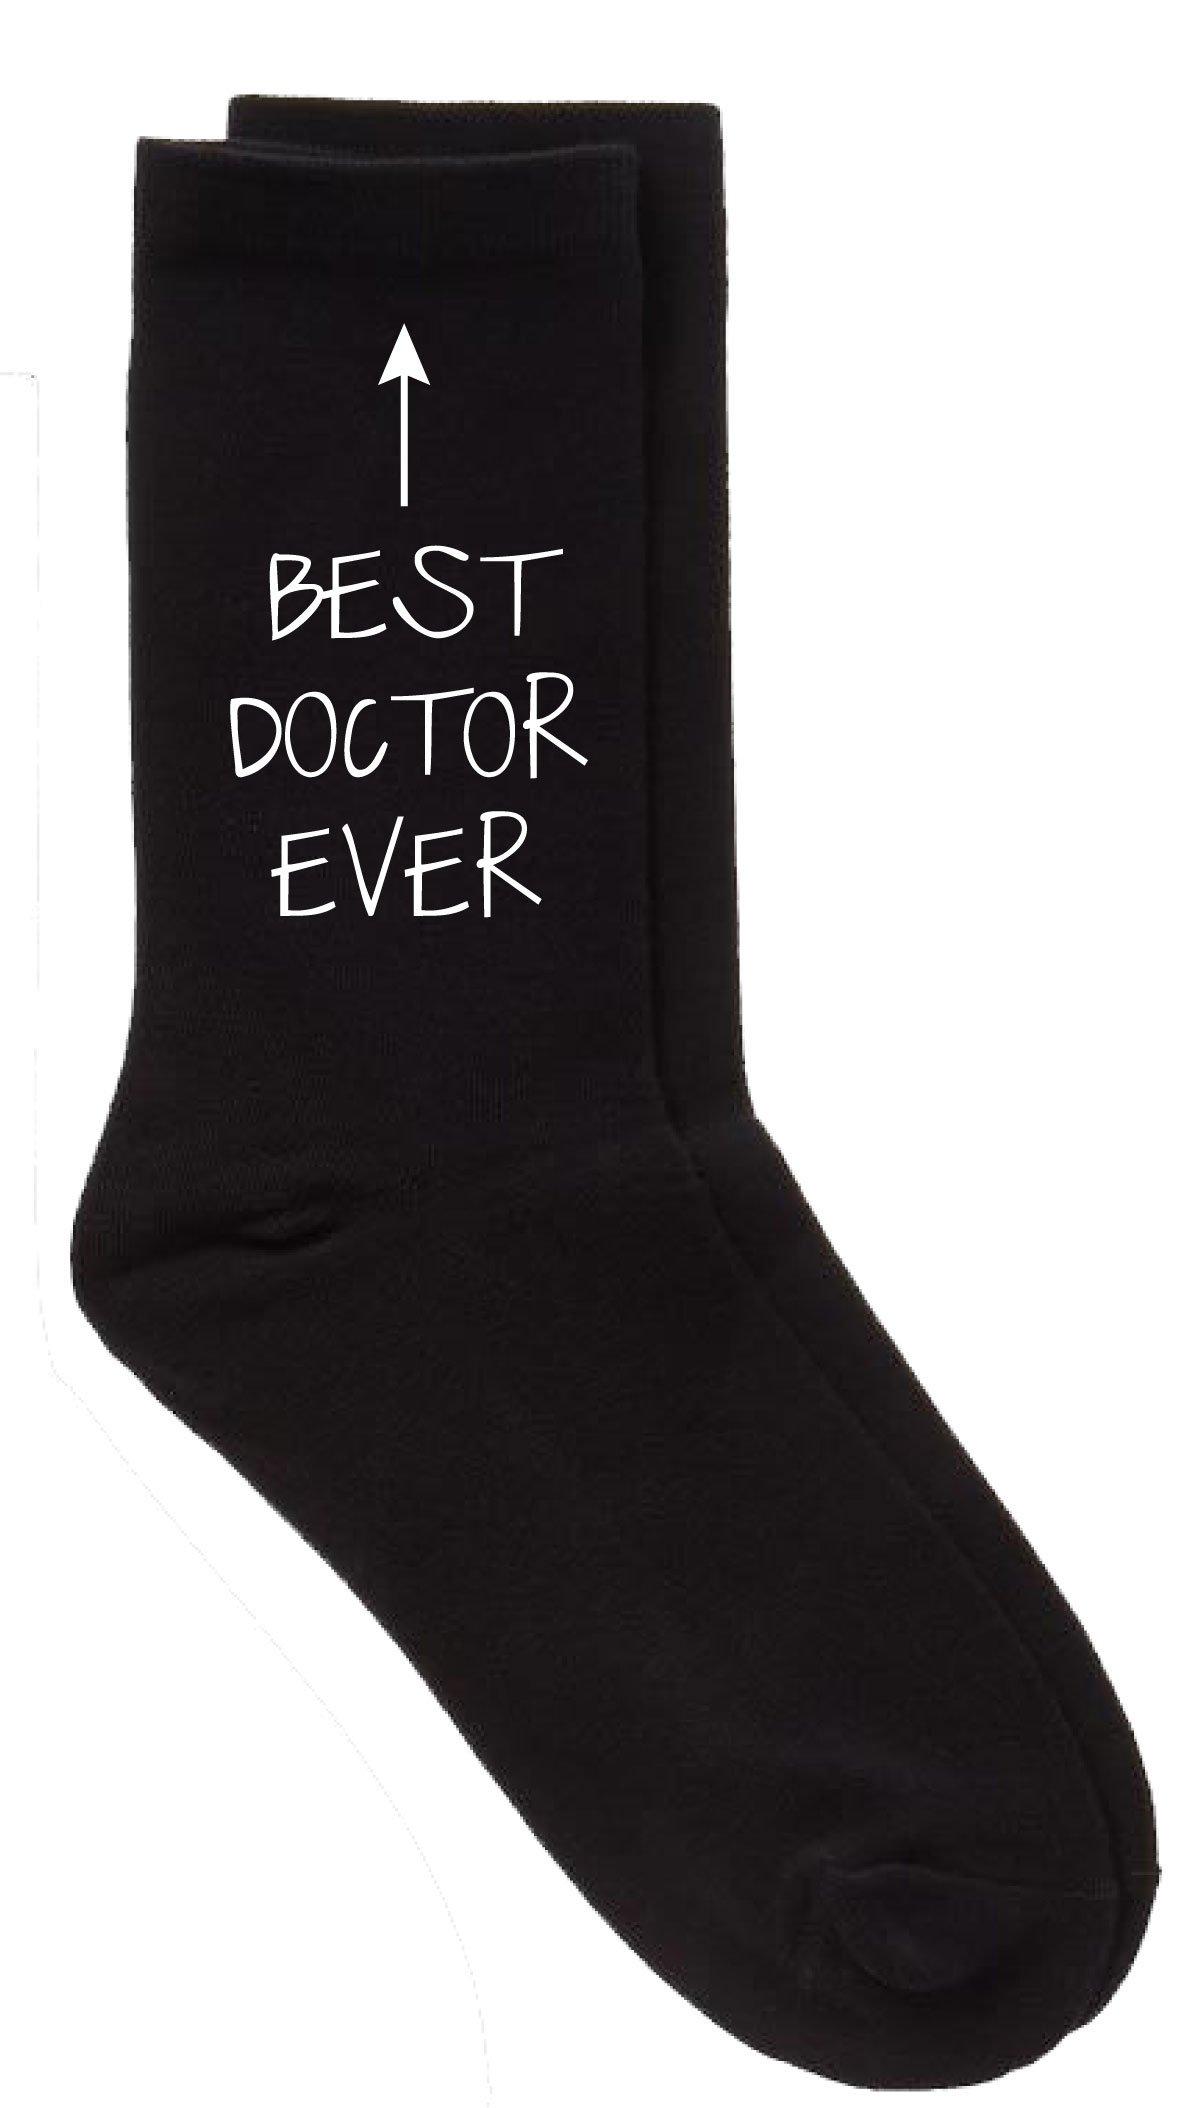 черные носки до щиколотки best dad ever period 60 second makeover черный Черные носки до середины икры Best Doctor Ever 60 SECOND MAKEOVER, черный